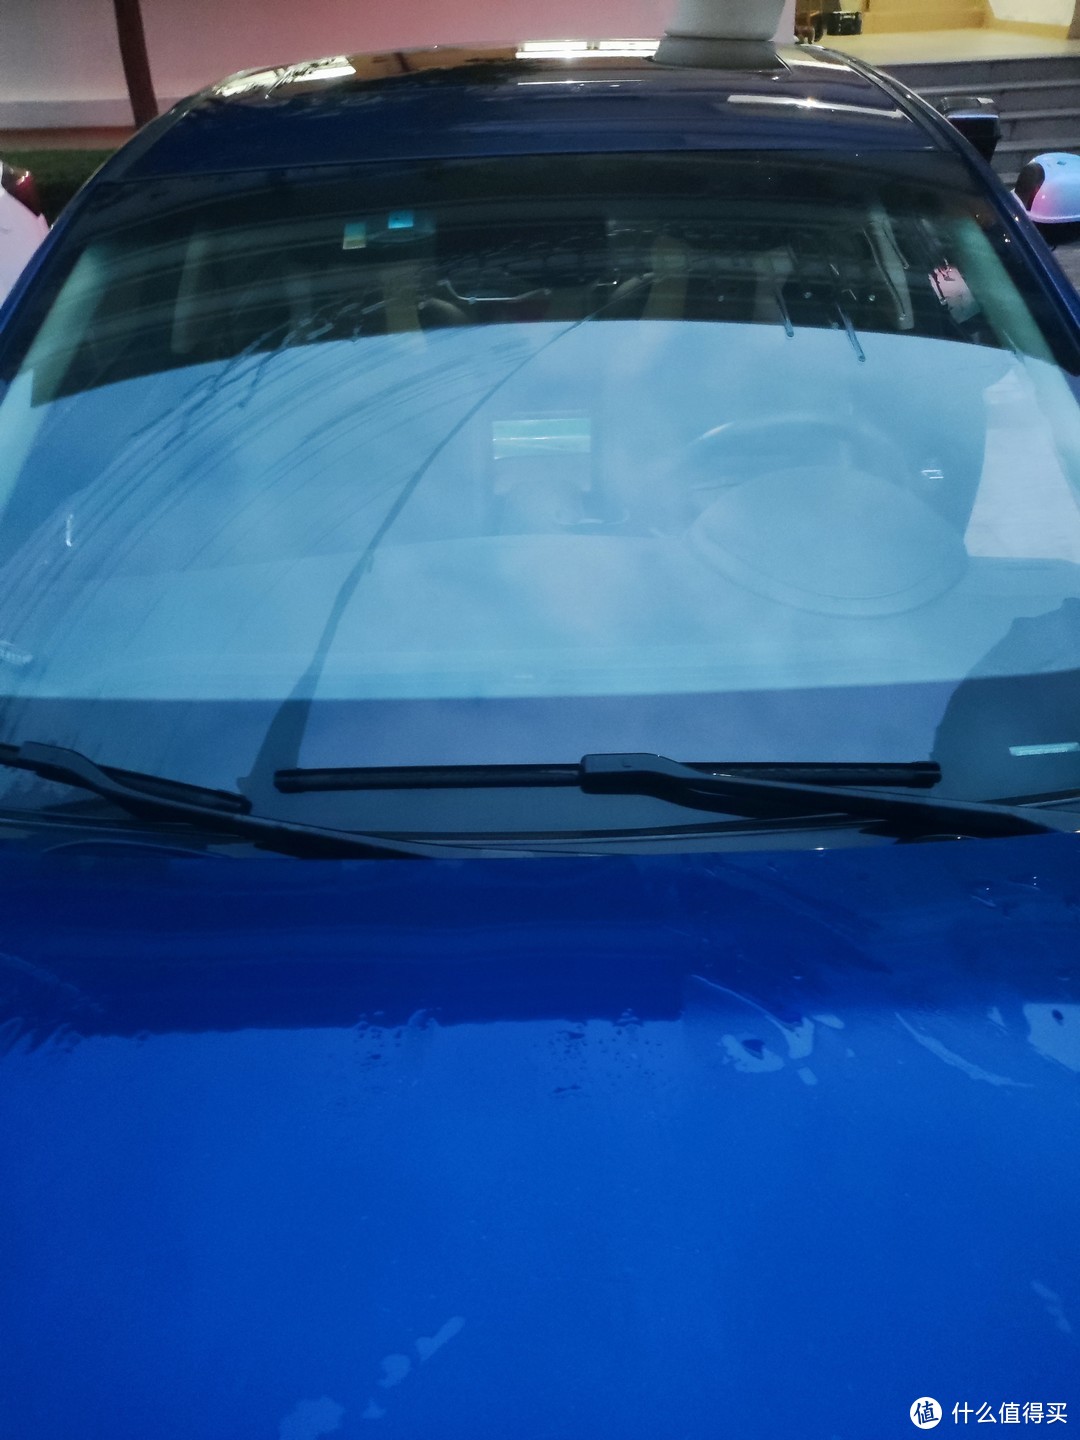 一块钱买的汽车玻璃油膜清洗剂，试一下使用效果如何？